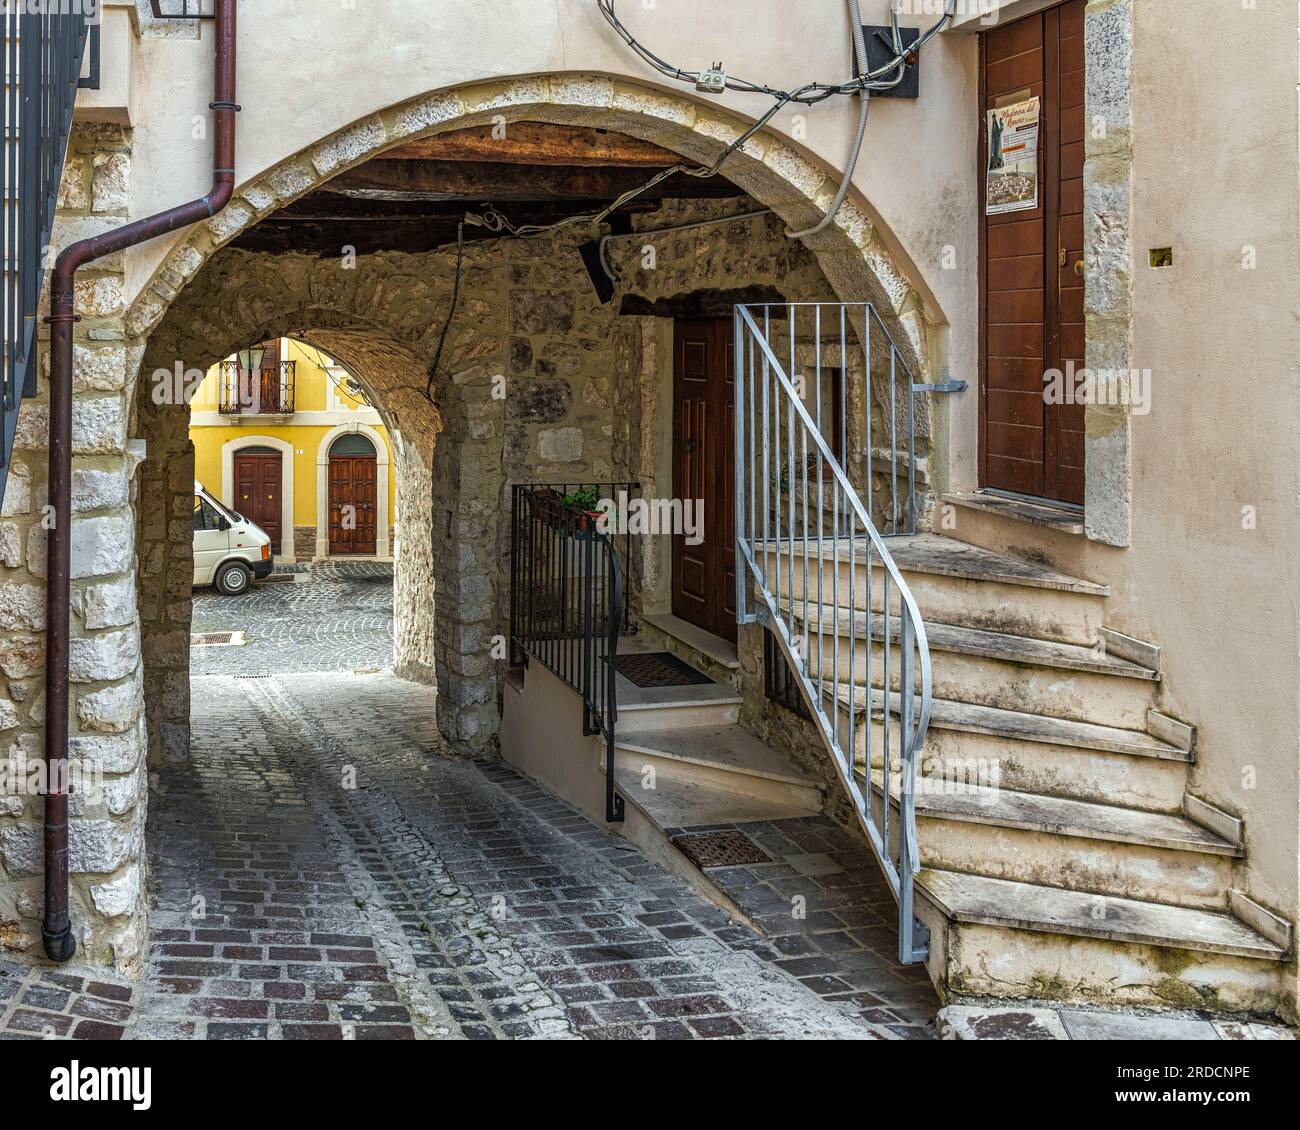 Werfen Sie einen Blick auf Gassen, Treppen, Arkaden, Dekorationen, Bögen und Häuser der mittelalterlichen Stadt Goriano Sicoli. Goriano SIcoli, Abruzzen Stockfoto